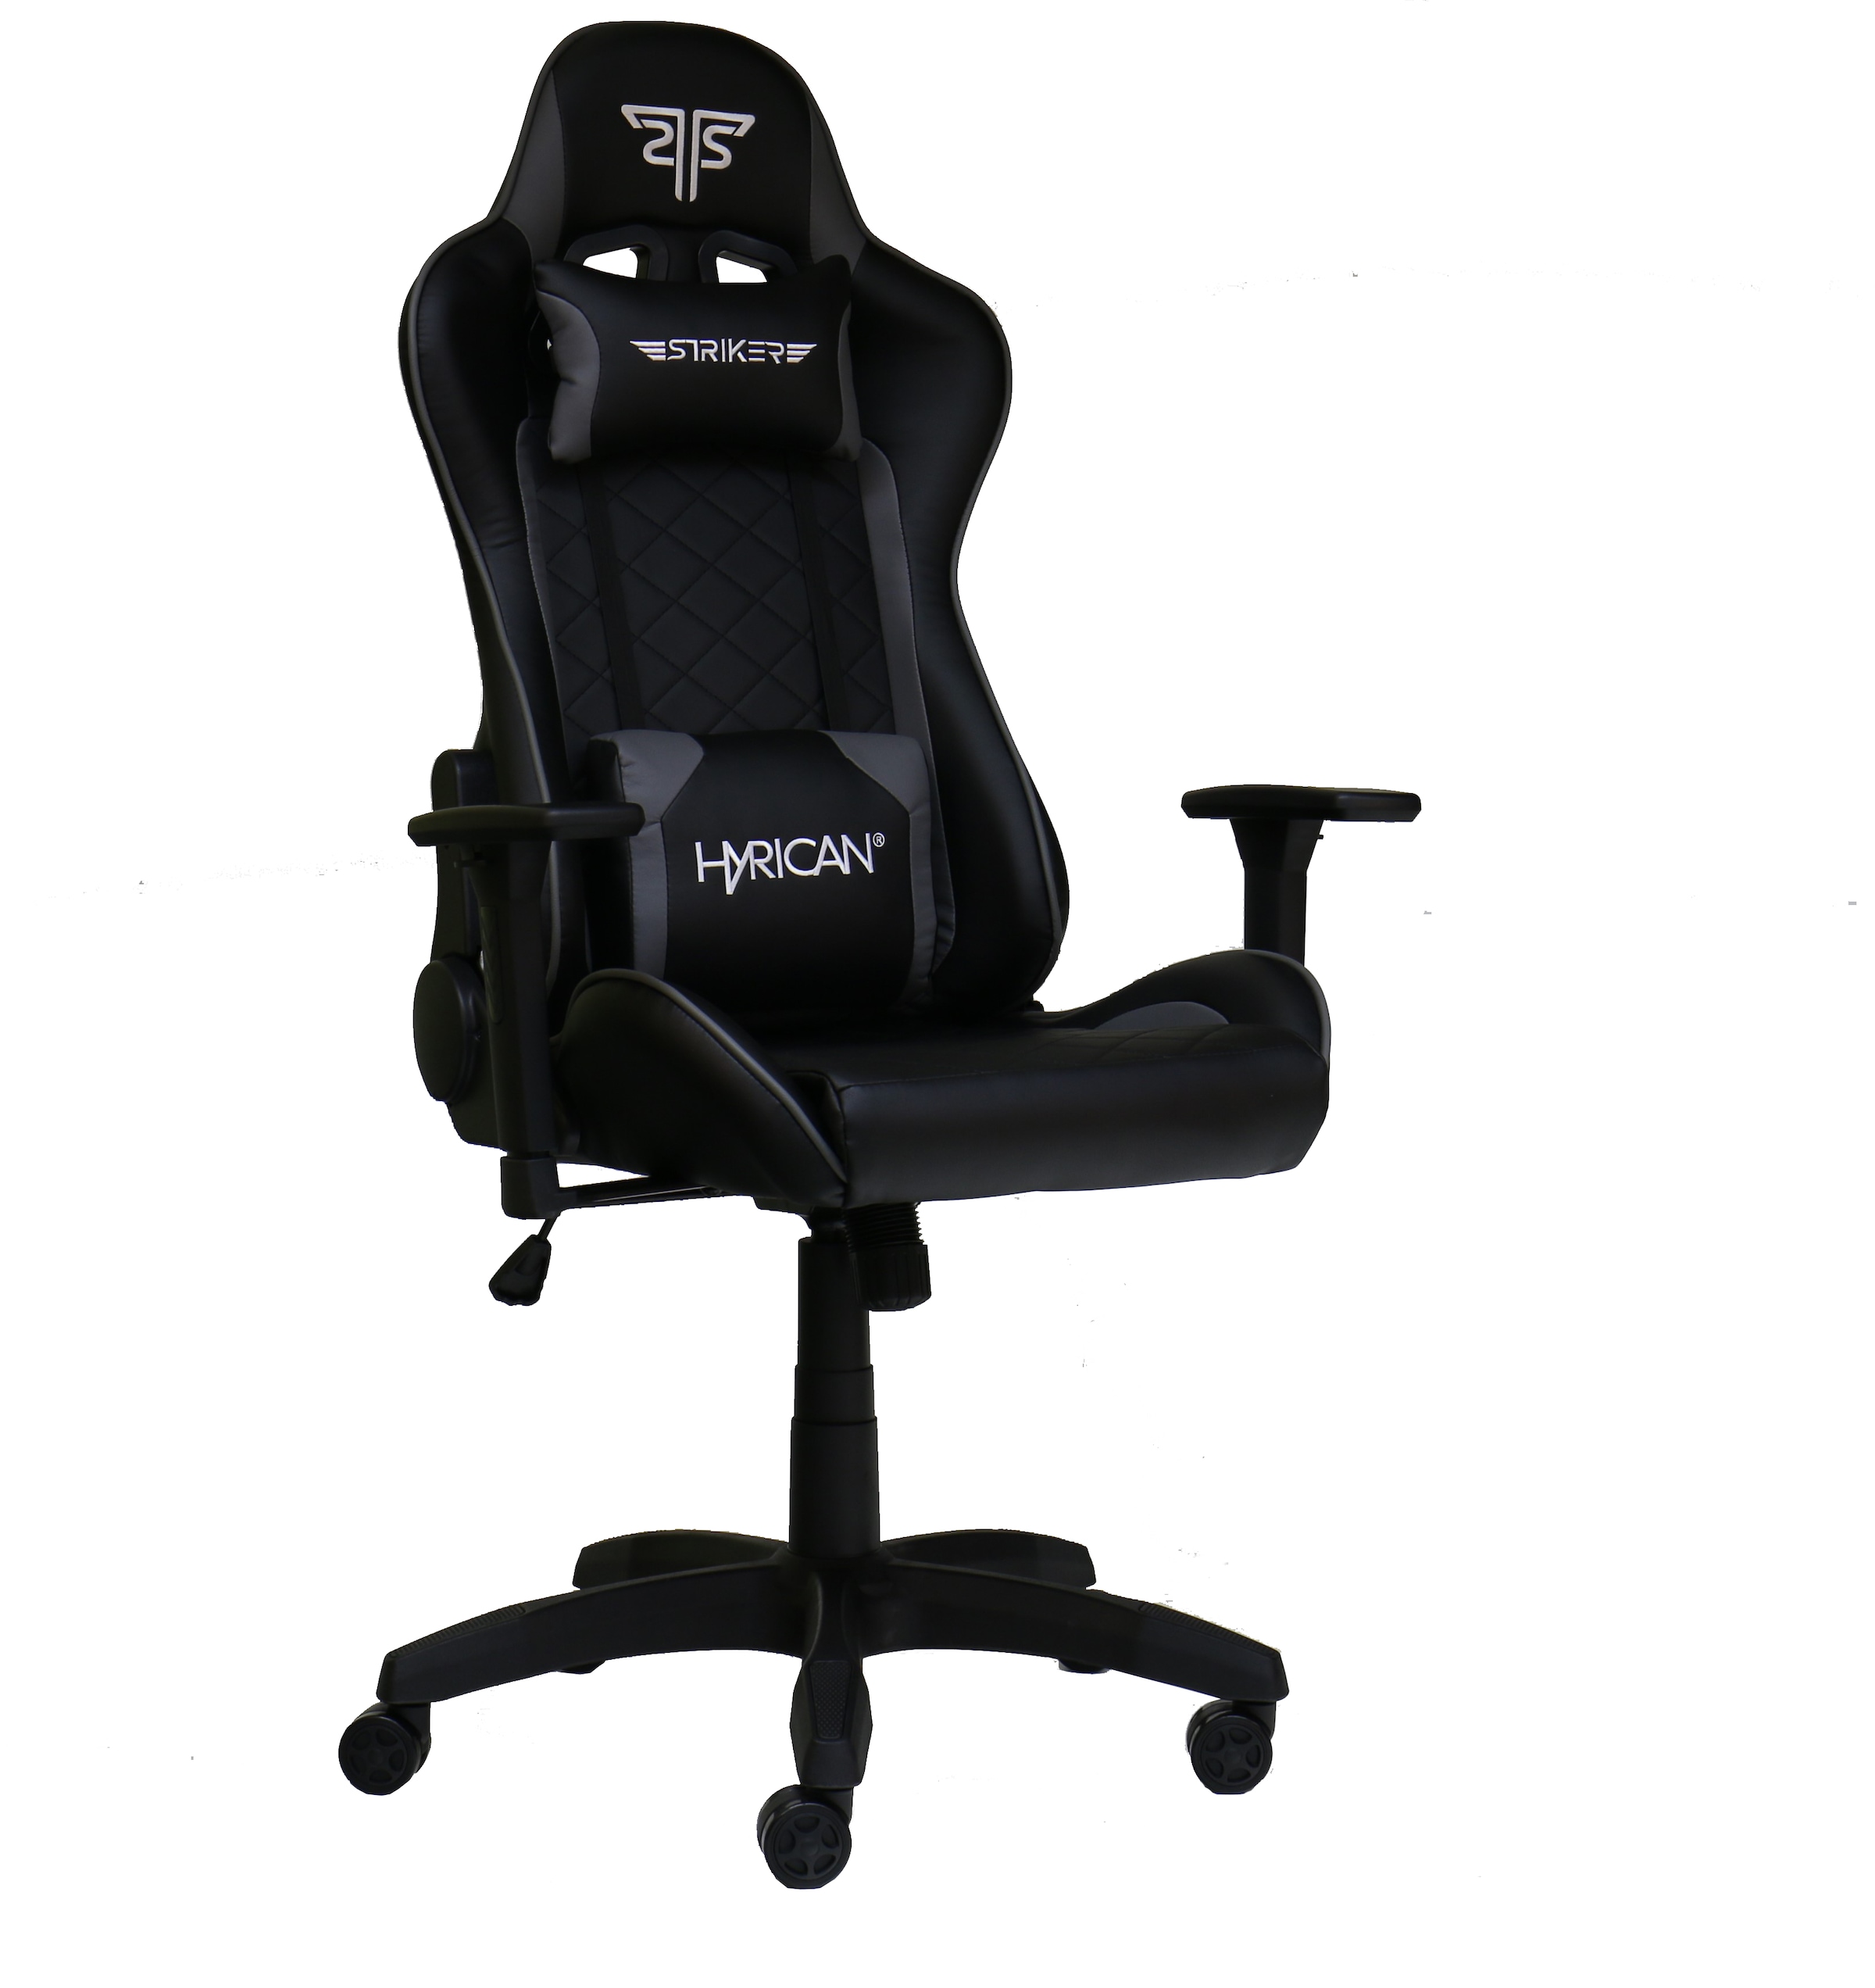 Hyrican Gaming-Stuhl »"Striker Comander" schwarz, ergonomischer Gamingstuhl«, Kunstleder, Bürostuhl, Schreibtischstuhl, geeignet für Kinder und Jugendliche